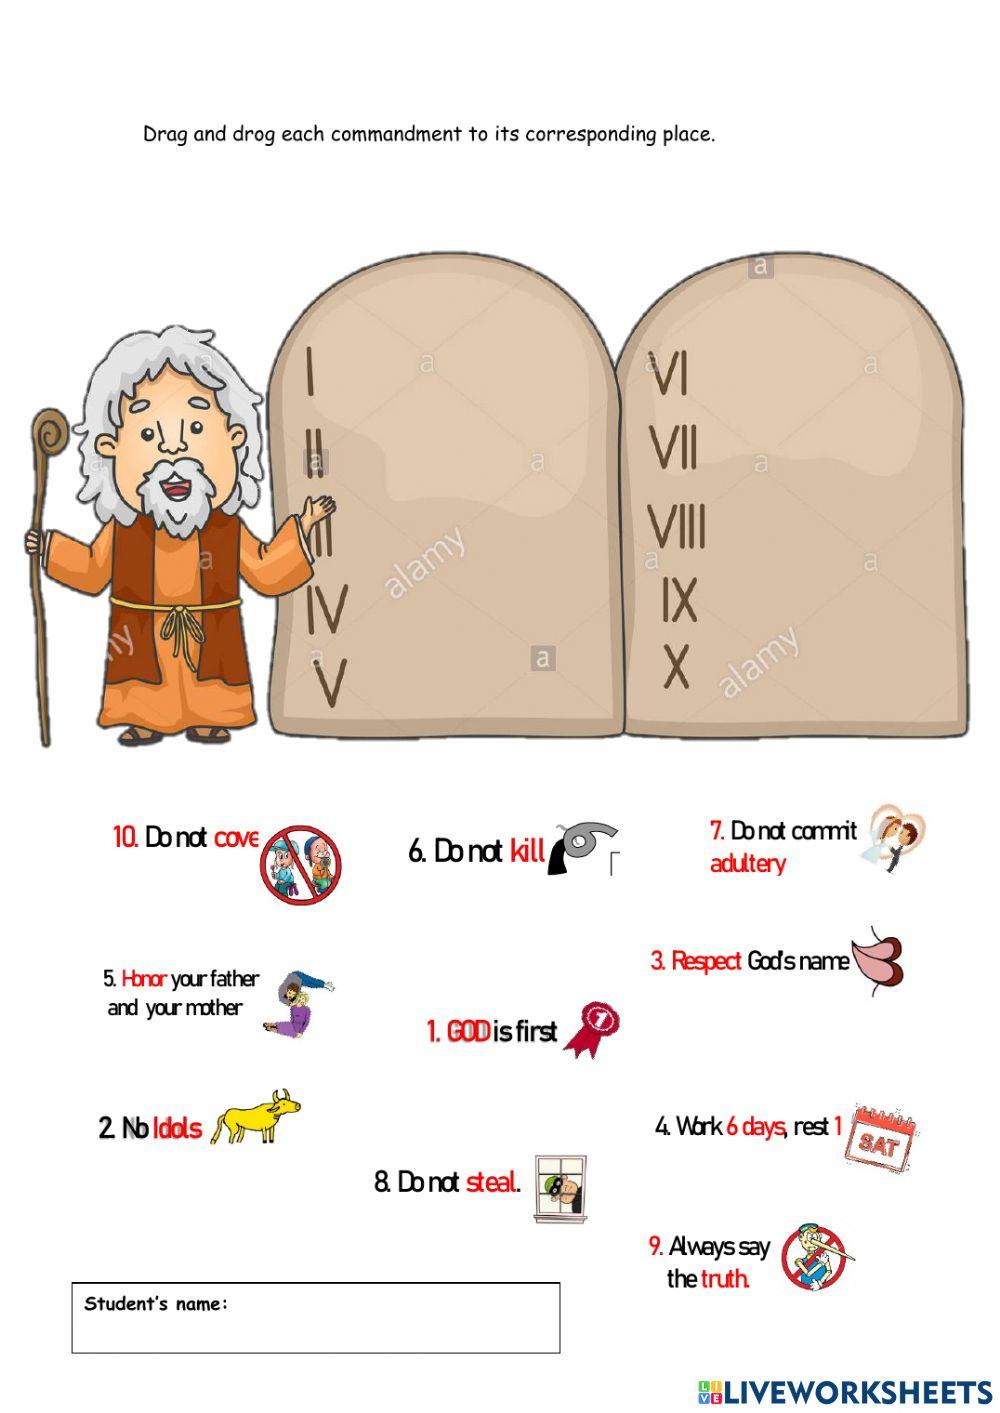 Practice 10 Commandments